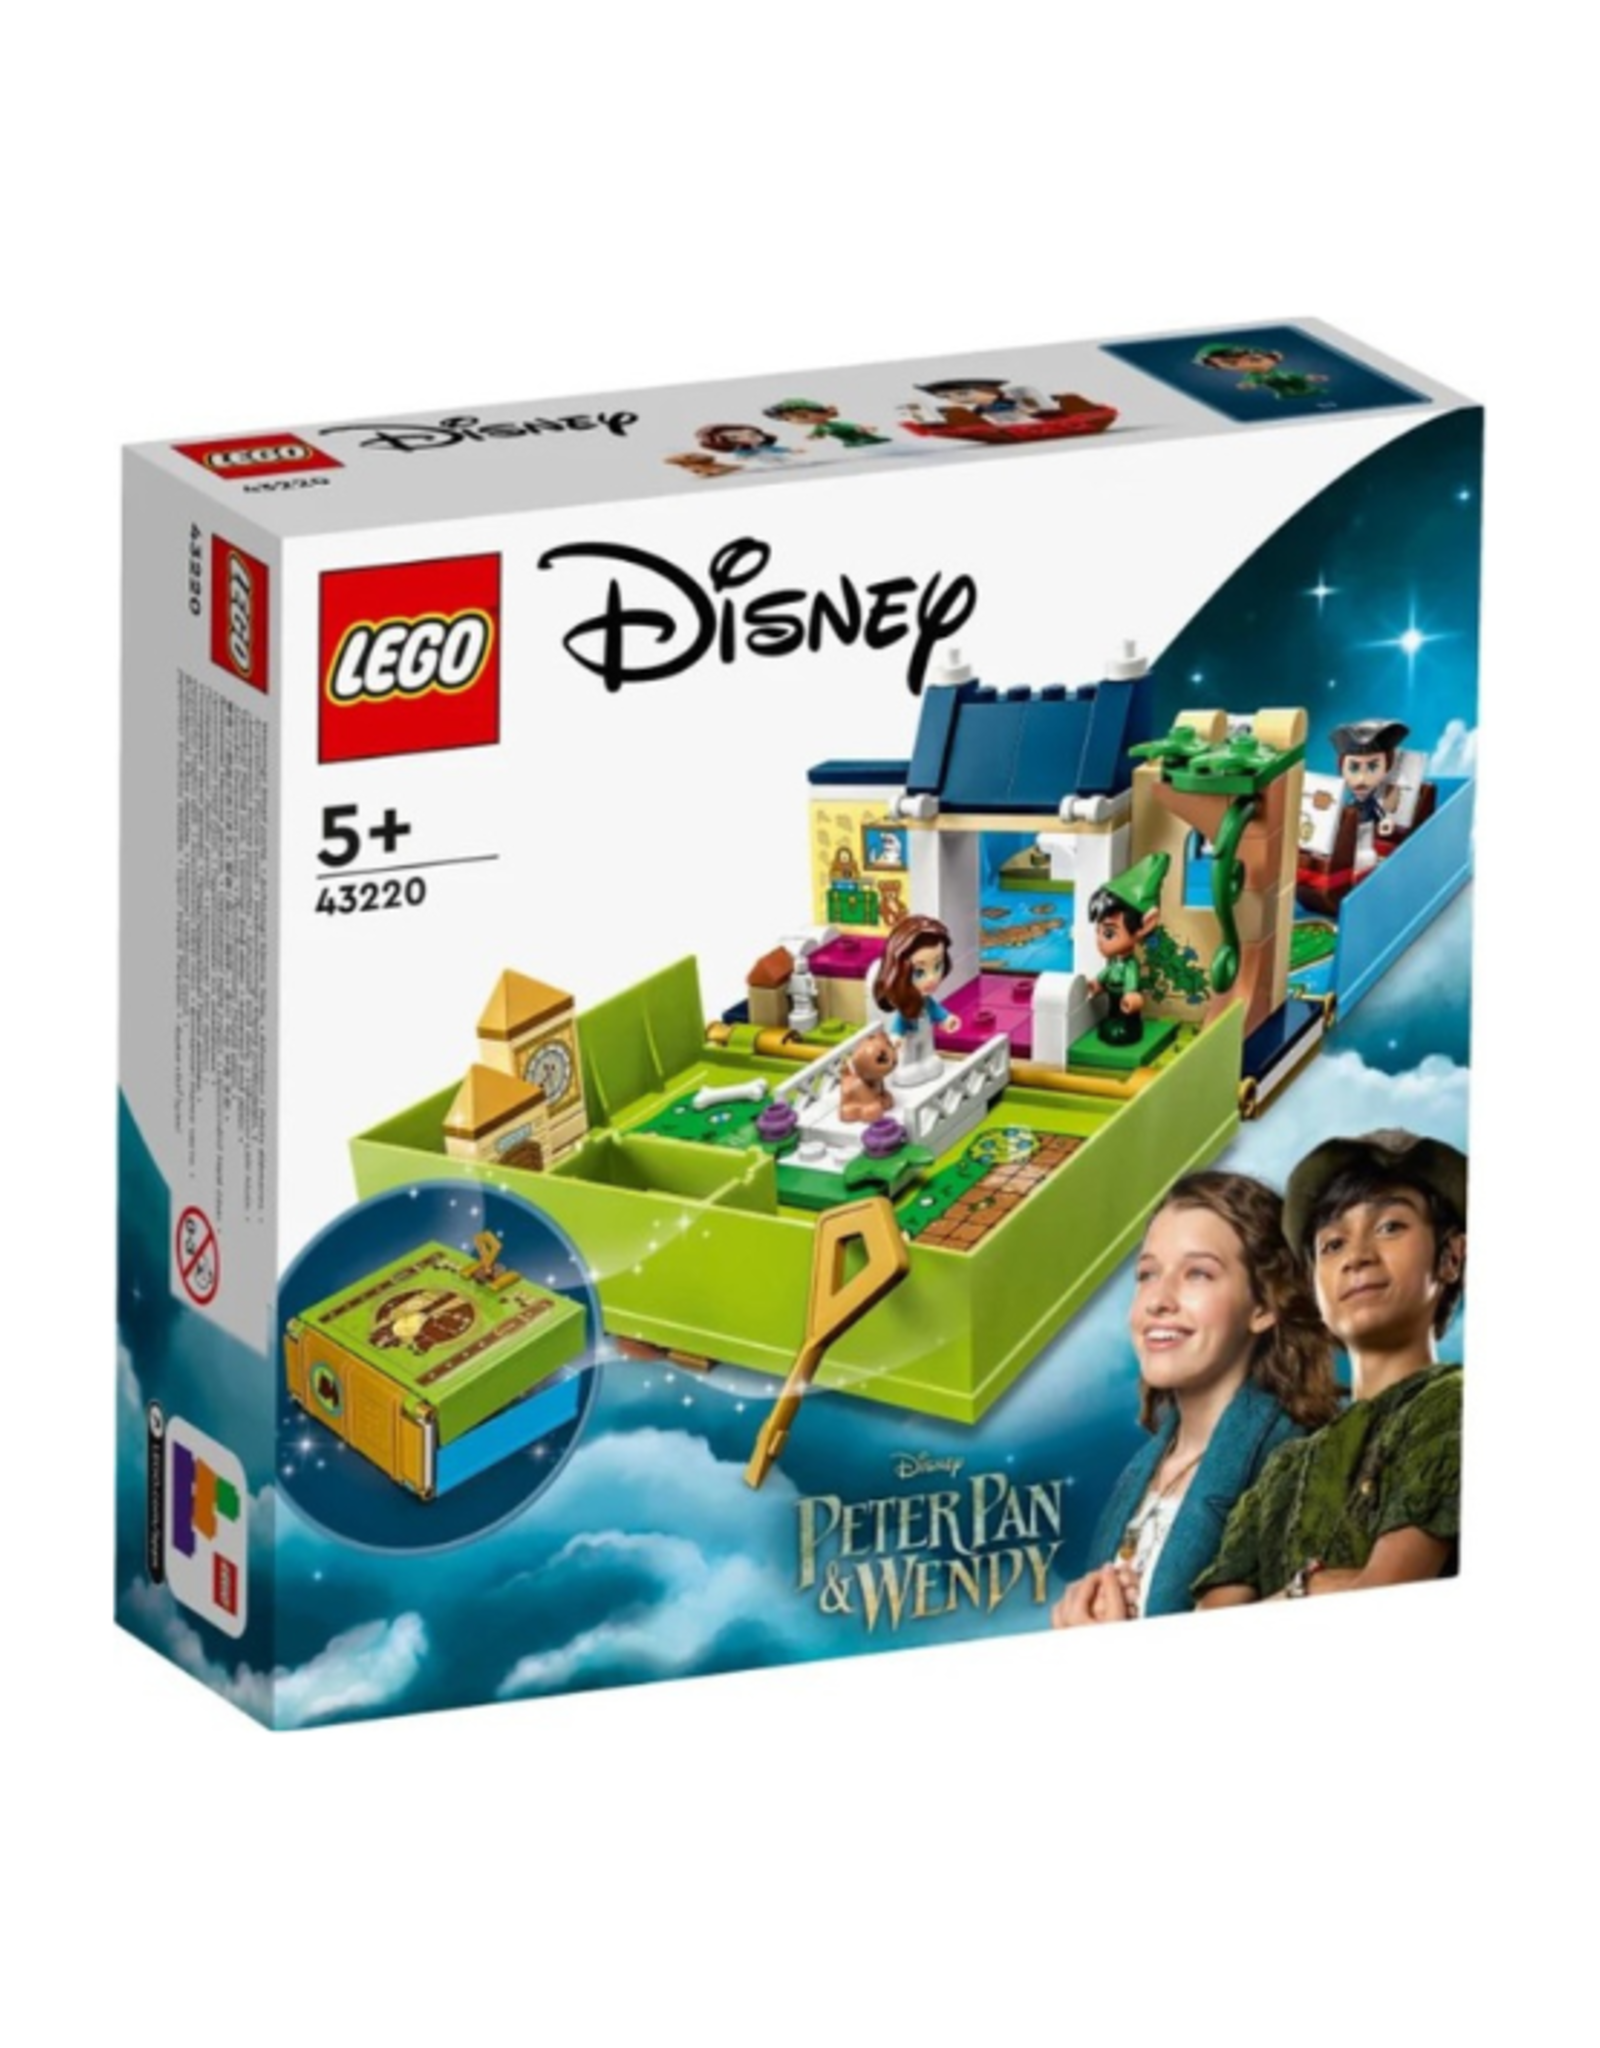 Lego - Disney - 43220 - Peter Pan & Wendy's Storybook Adventure